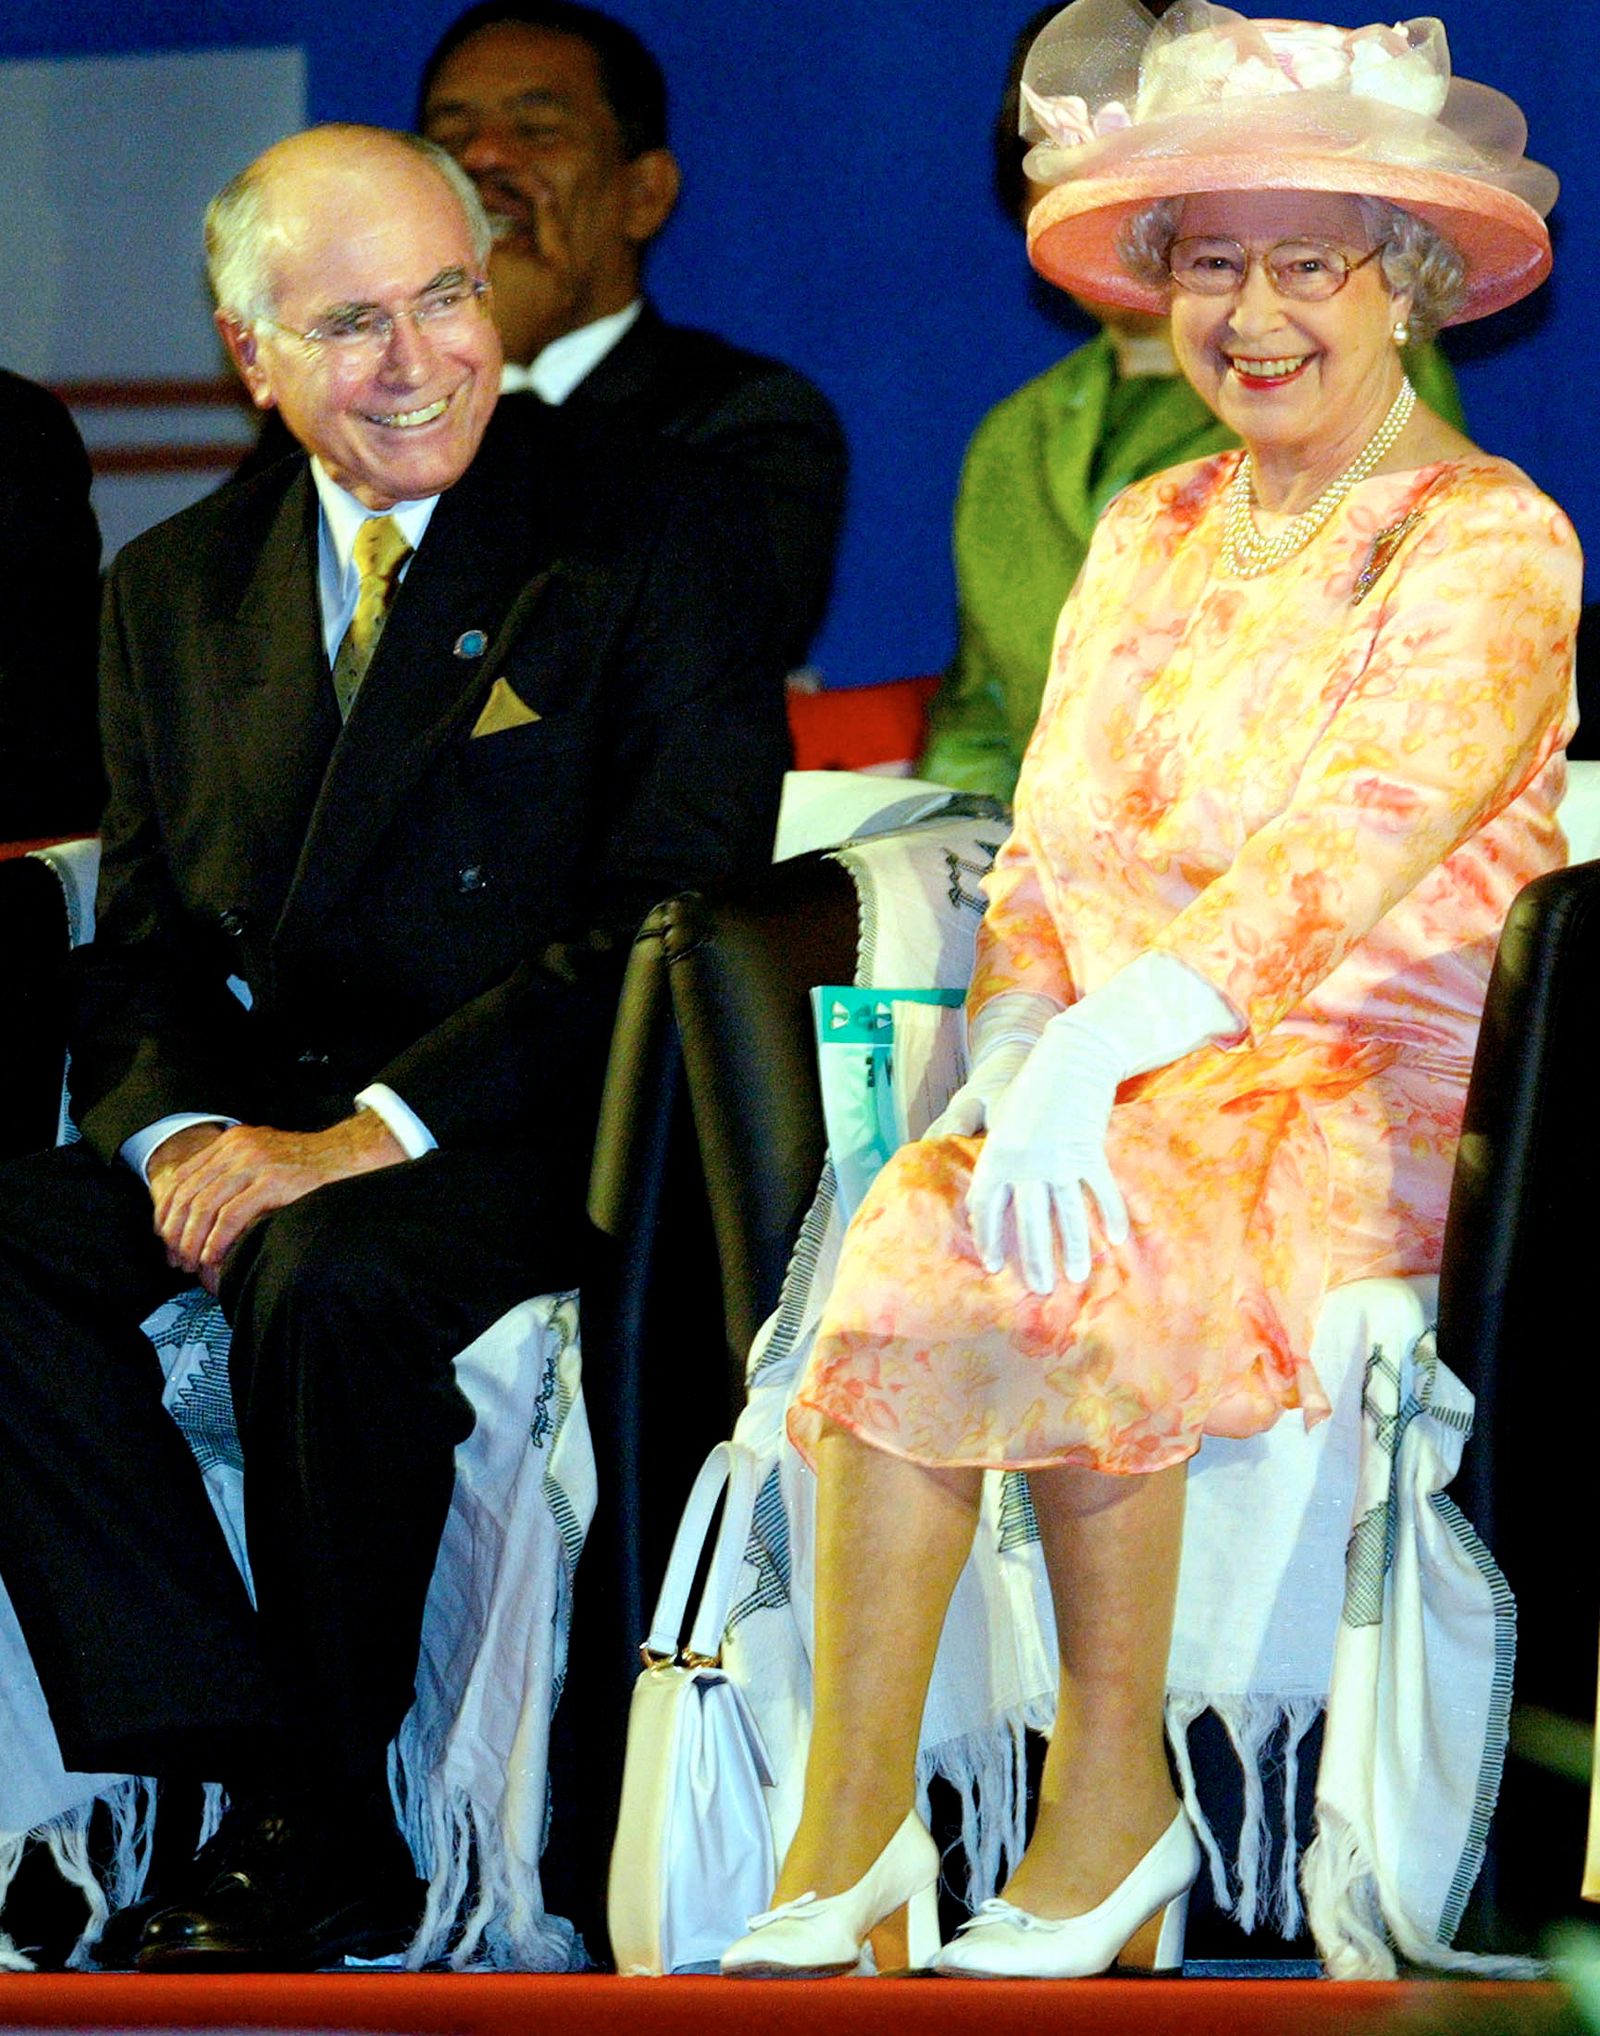 الملكة إليزابيث الثانية (إلى اليمين) مع رئيس الوزراء الأسترالي جون هوارد في الجلسة الافتتاحية لقمة الكومنولث في أبوجا في 5 ديسمبر 2003. - REUTERS